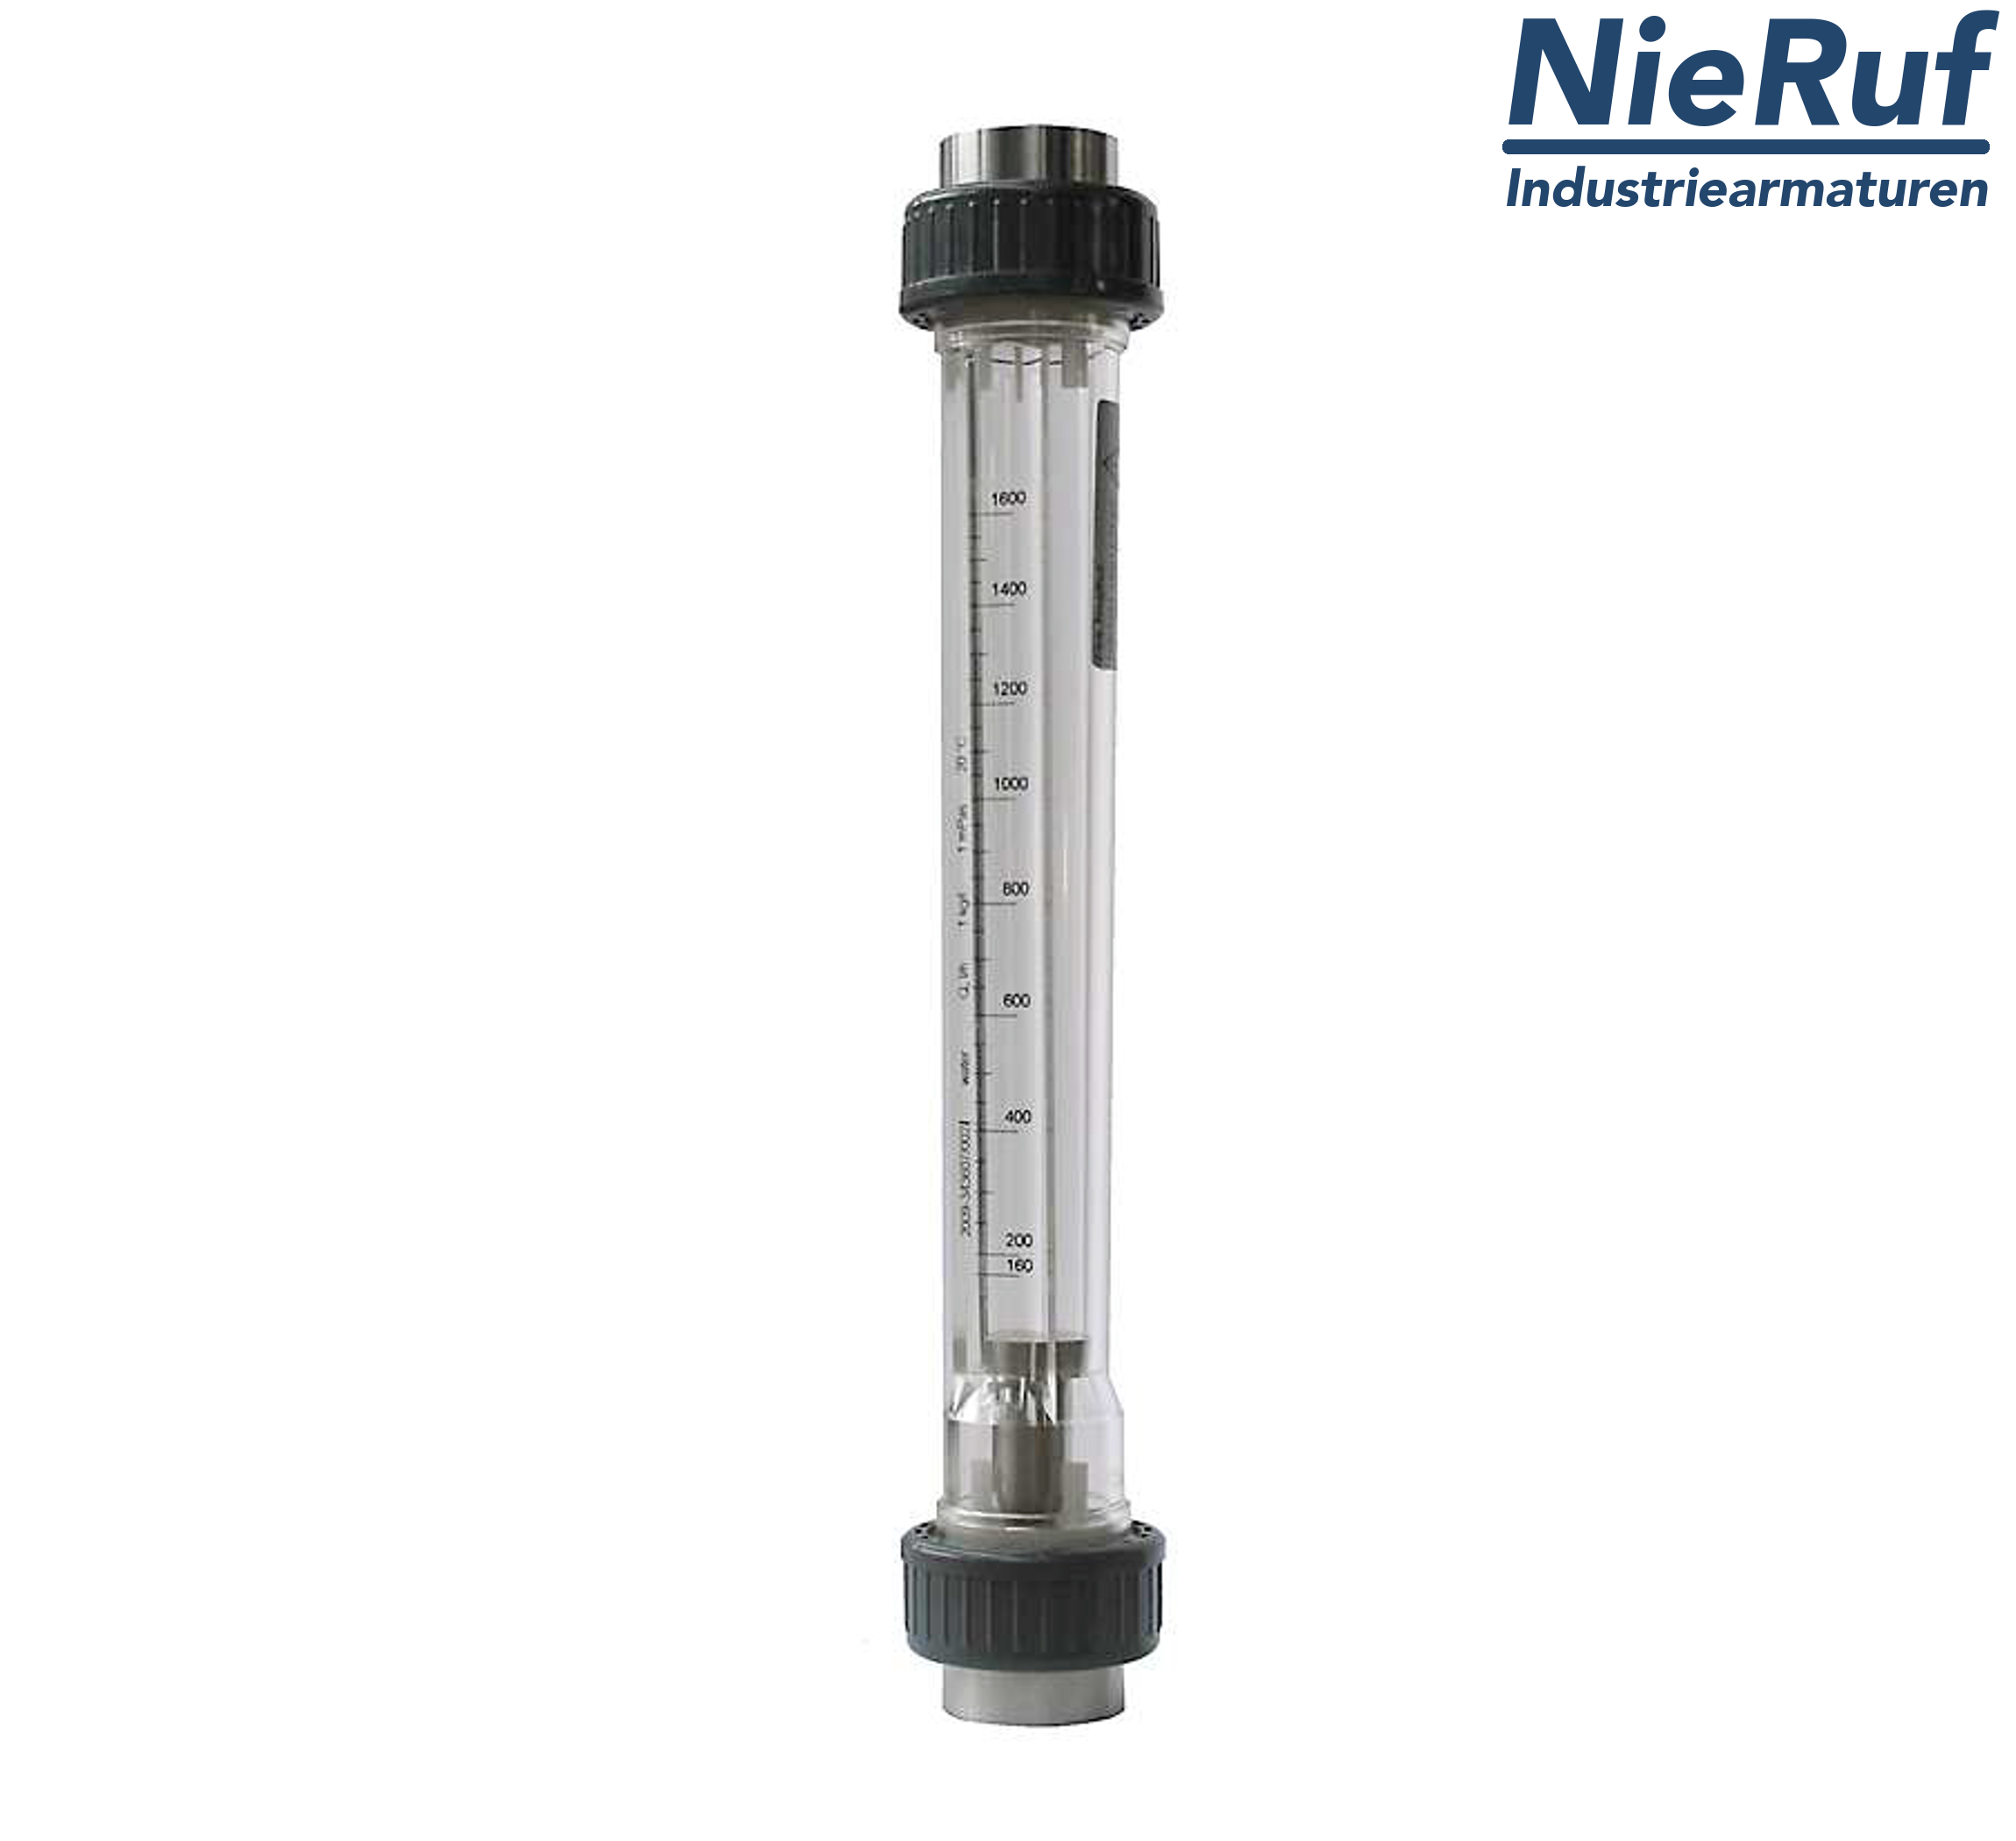 Variable area flowmeter 1 1/2" Inch NPT 117000.0 - 350000 l/h air NBR